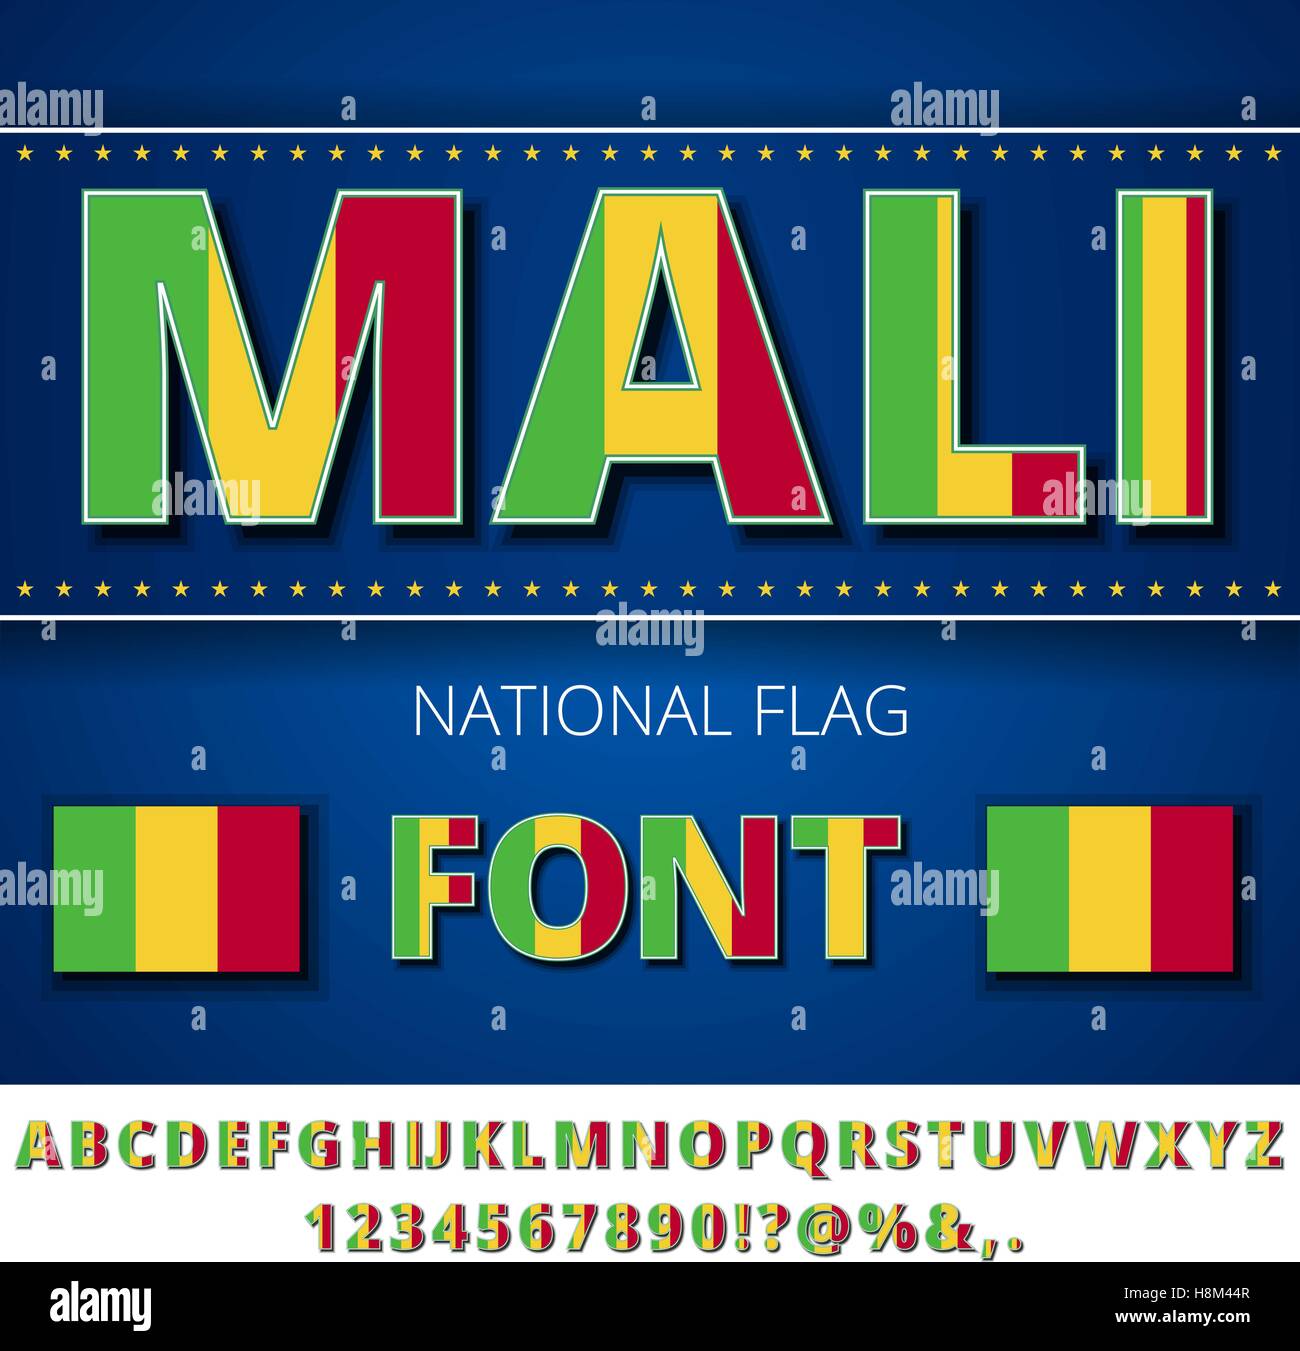 Polices de drapeau de Mali Illustration de Vecteur